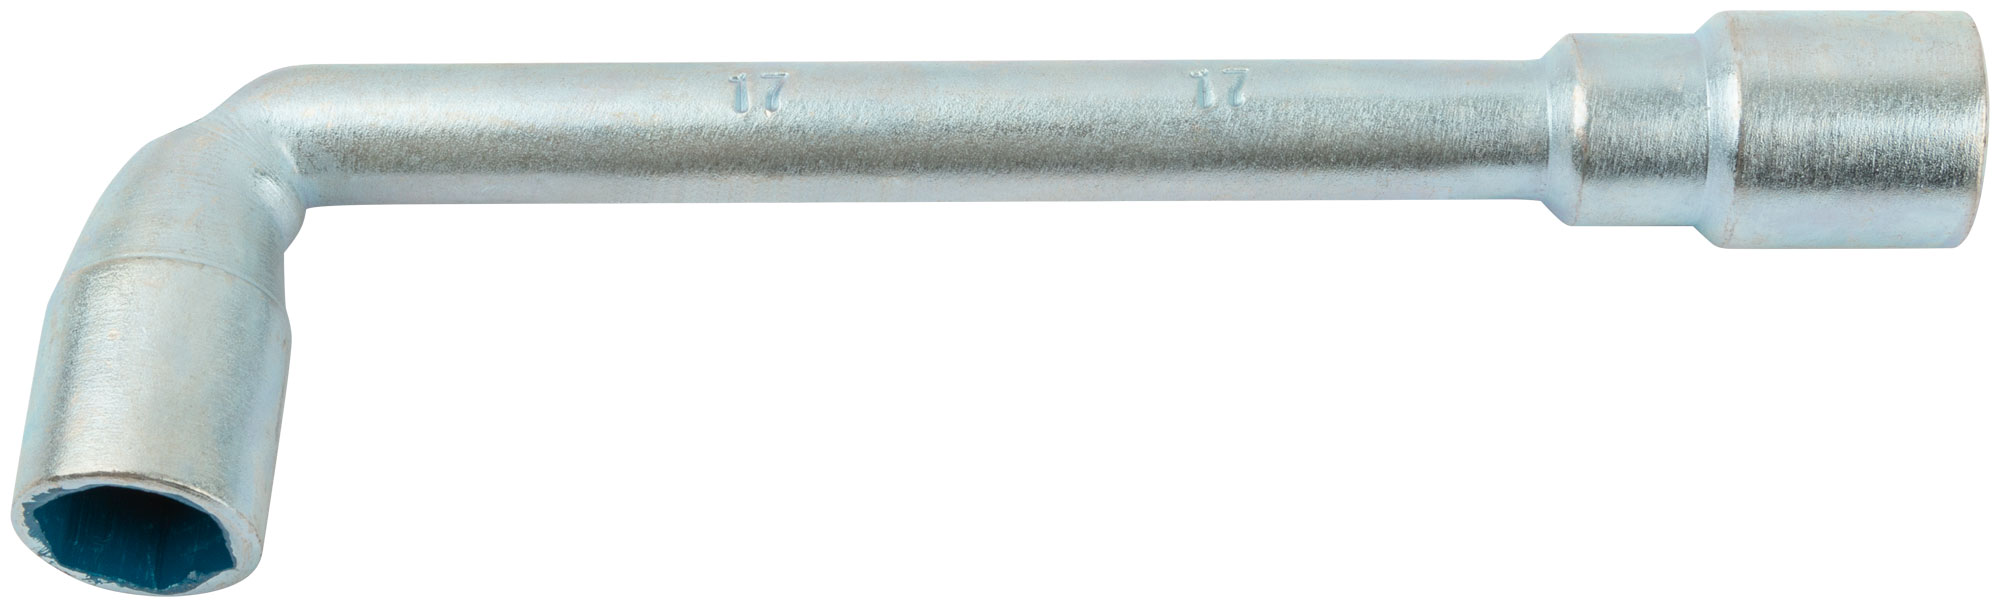 Ключ торцевой L-образный 17 мм. FIT 63017 г образный торцевой ключ kendo